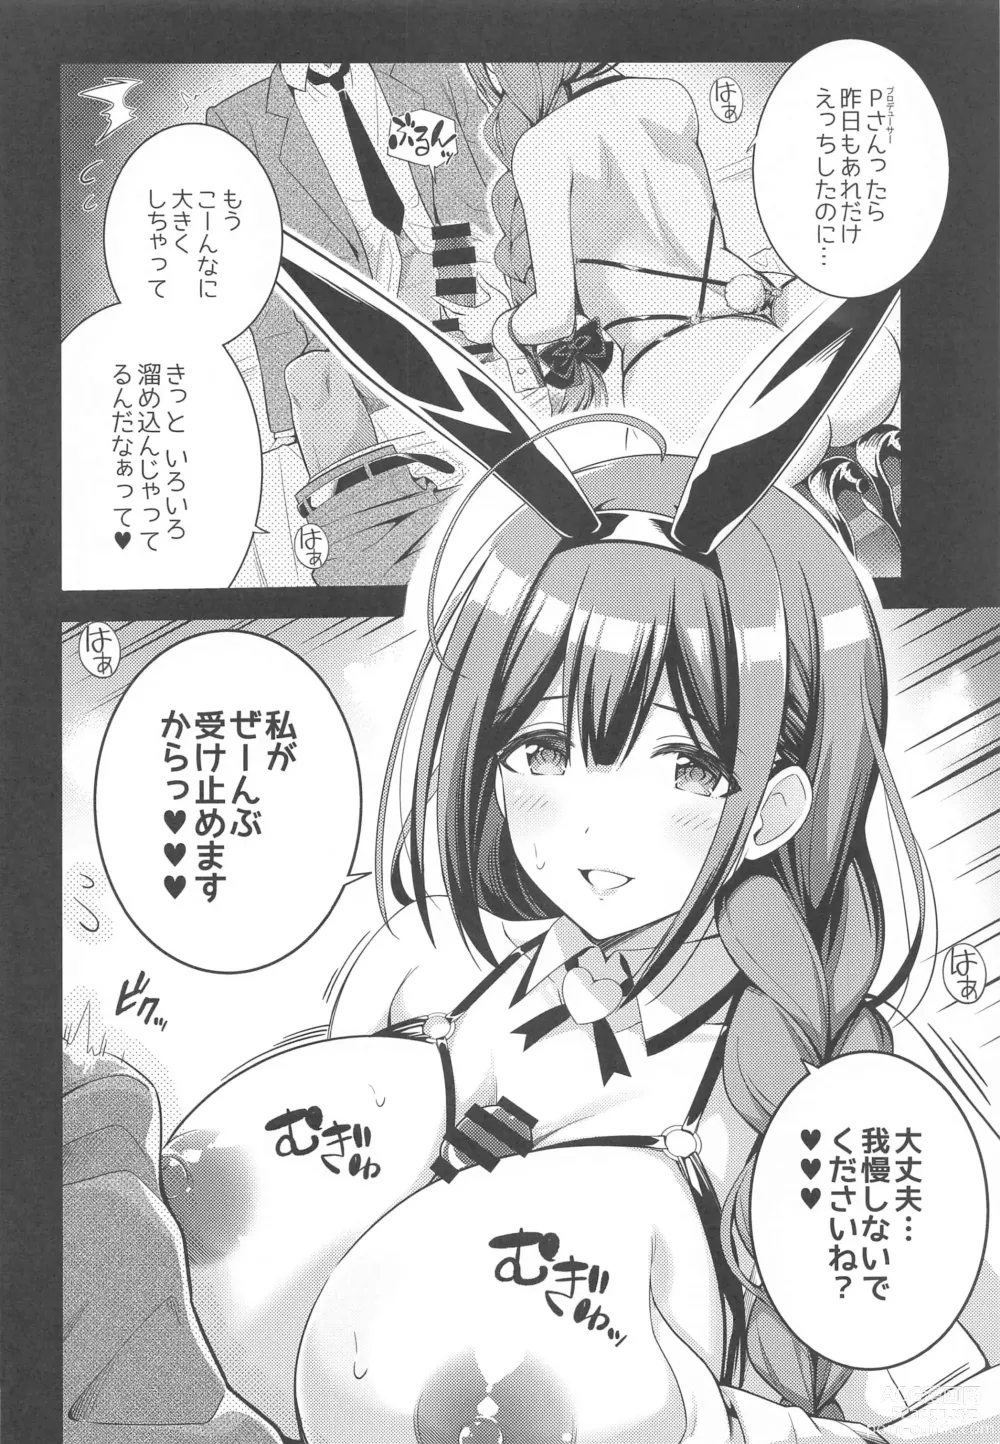 Page 5 of doujinshi 283 Kaiinsei Koukyuu Chijo Toku SS++ Himitsu Chika Idol  Bunny Club  -Chiyuki-